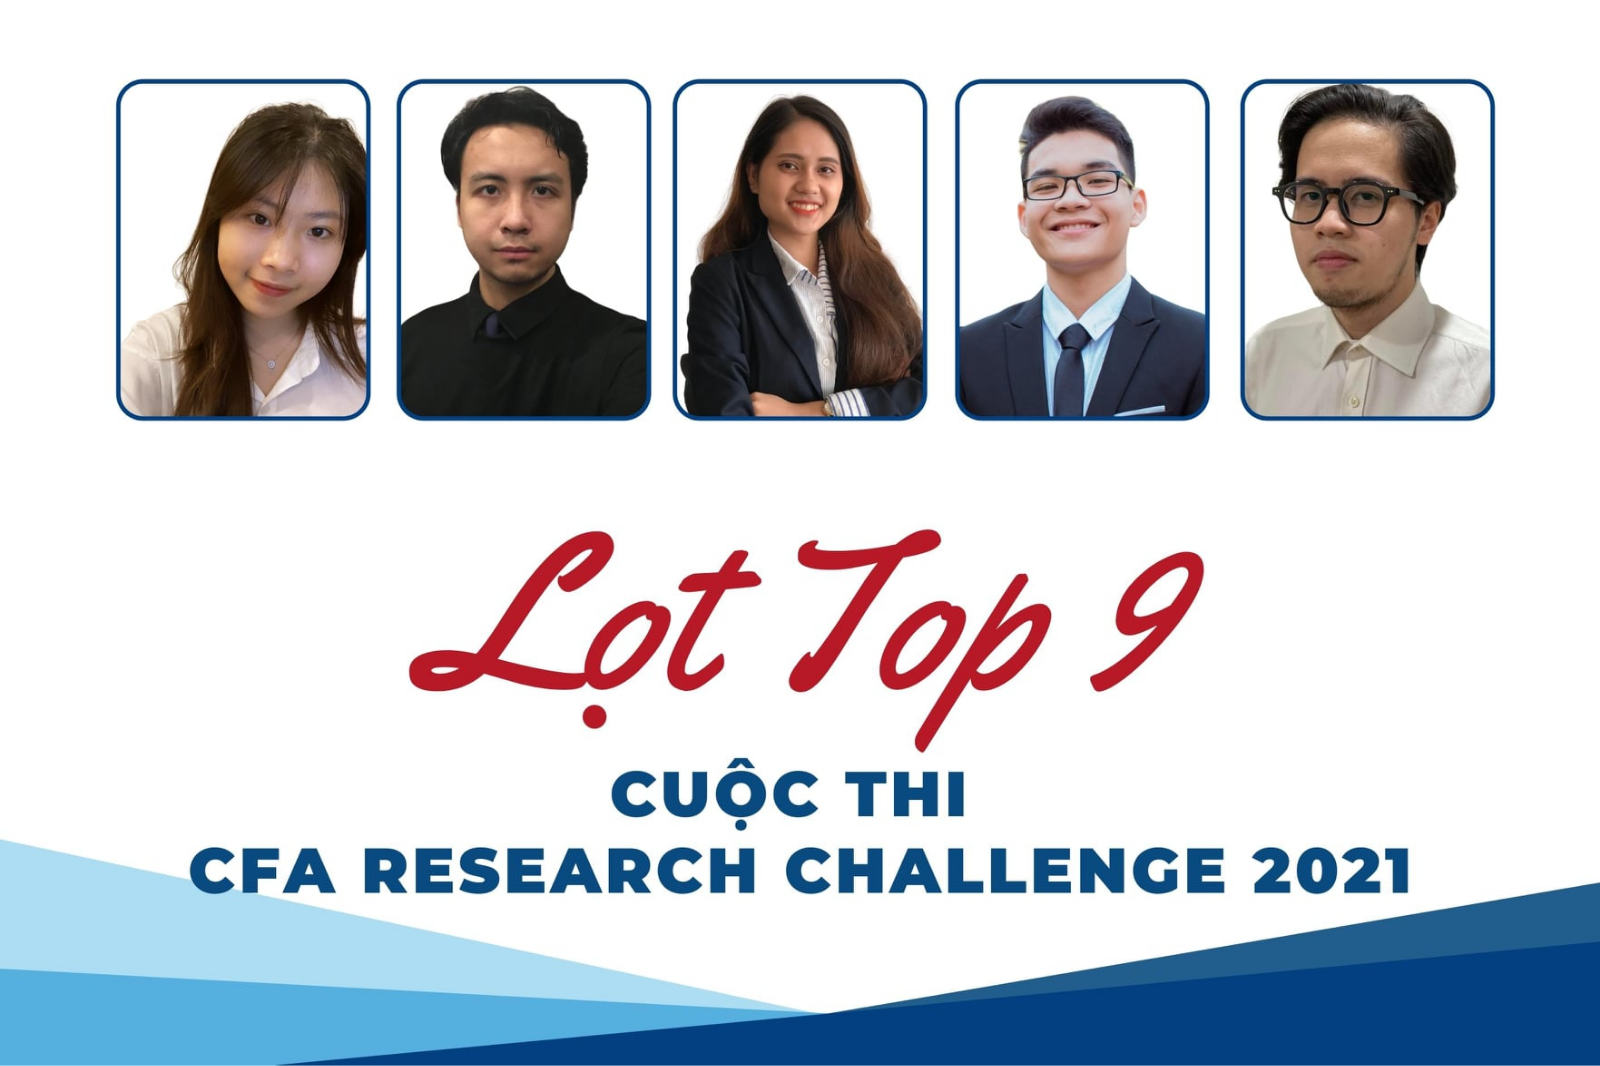 Đội thi CFA Trường Đại học Kinh tế - Đại học Quốc gia Hà Nội lọt vào Top 9 đội xuất sắc nhất tham dự vòng Bán kết cuộc thi CFA Research Challenge Vietnam 2021 - 2022